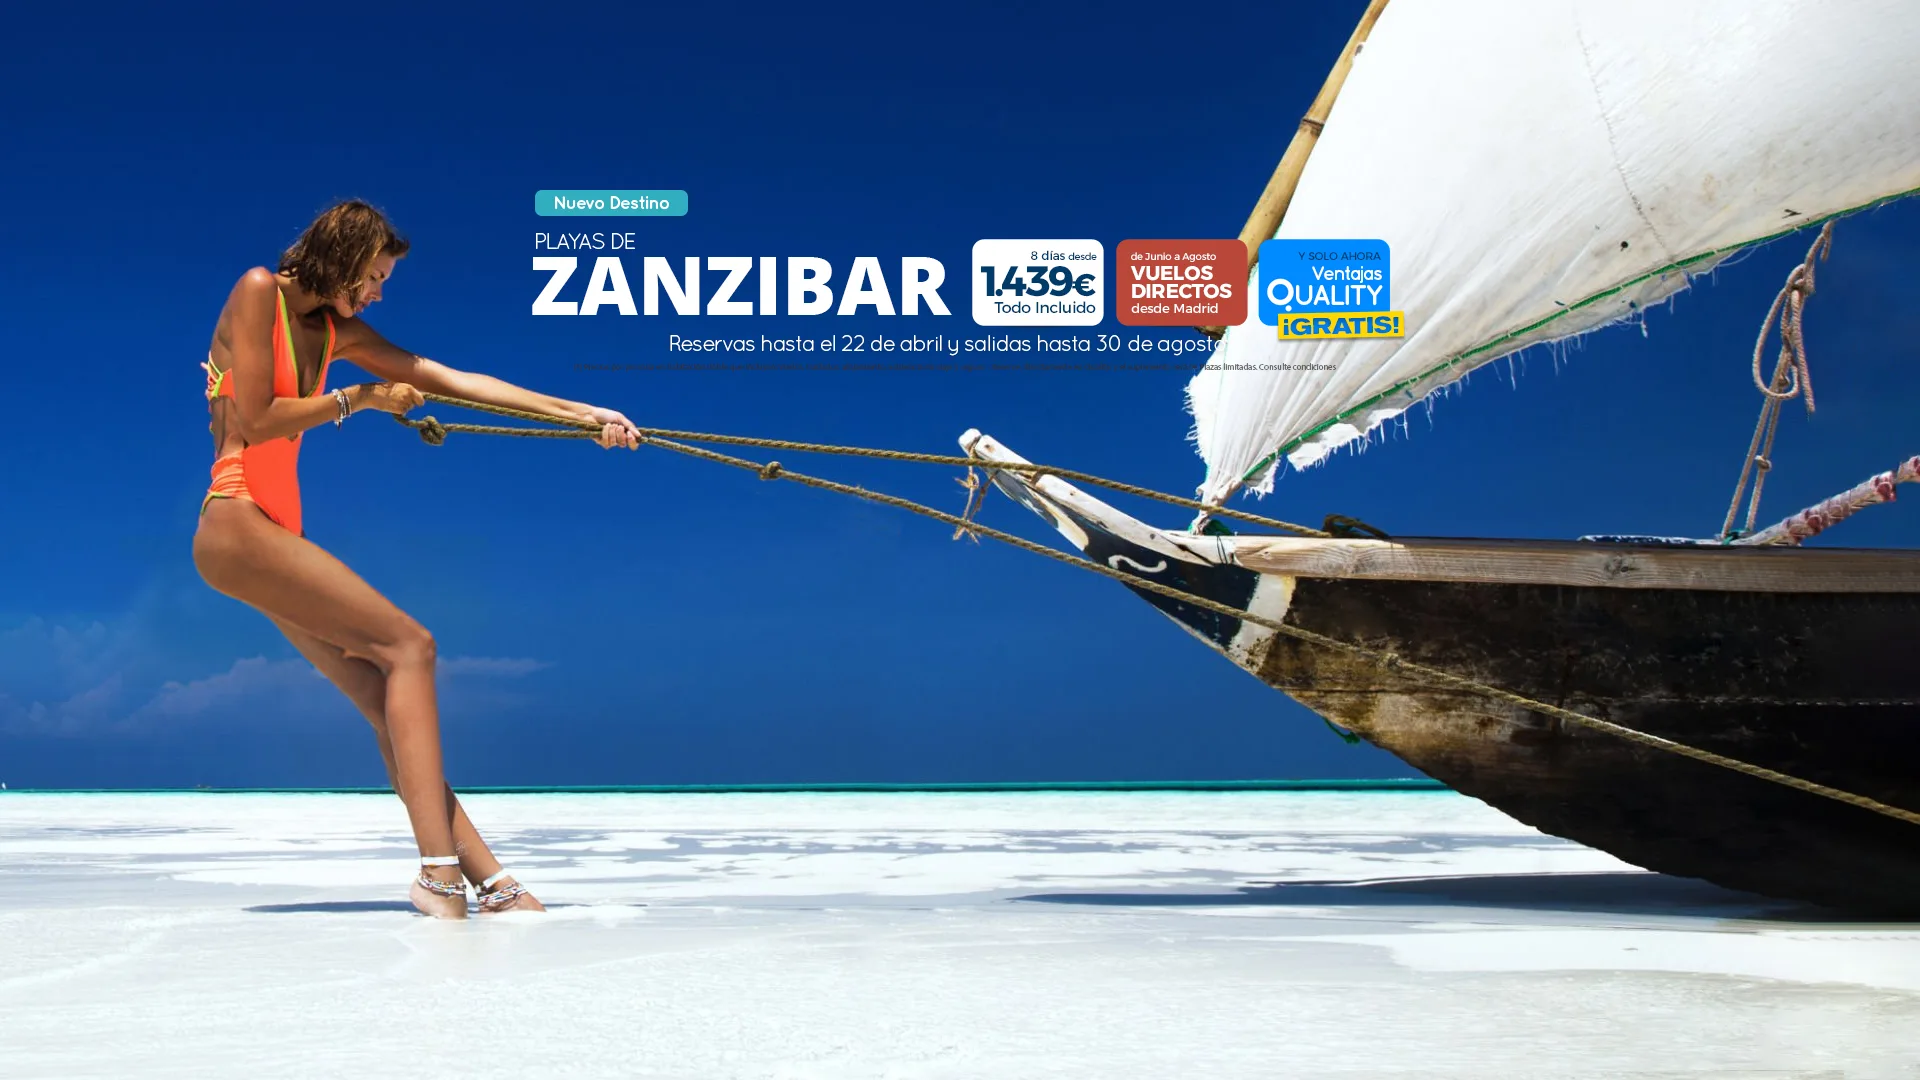 Zanzibar Quality